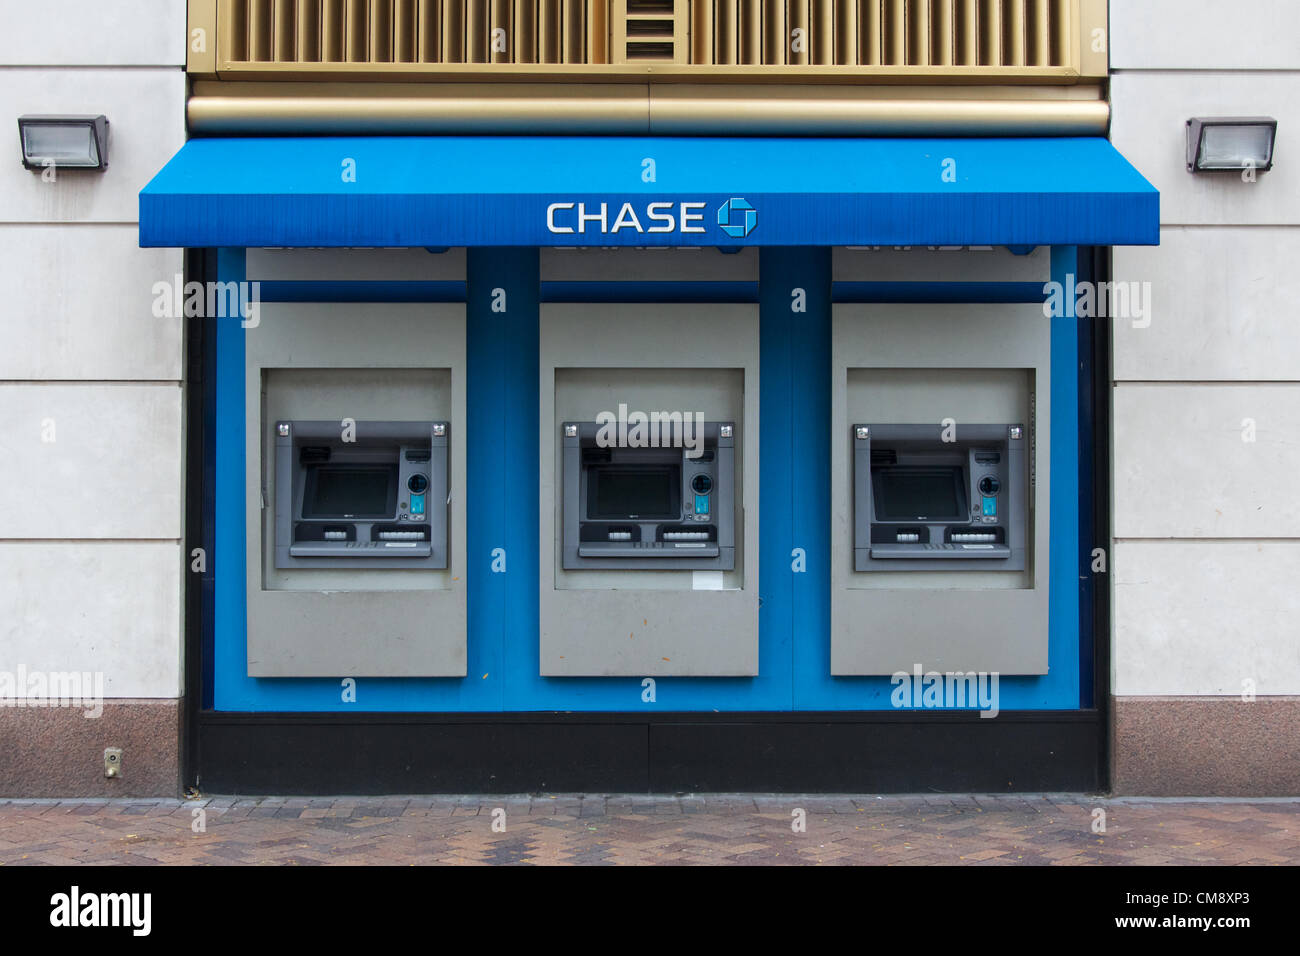 USA, NEW YORK, NY - 30. Oktober 2012: Chase Manhattan Bank Geldautomaten gegangen offline aufgrund des Stromausfalls in Manhattan, am Tag nach Hurrikan Sandy traf die Stadt, die niemals schläft. Stockfoto